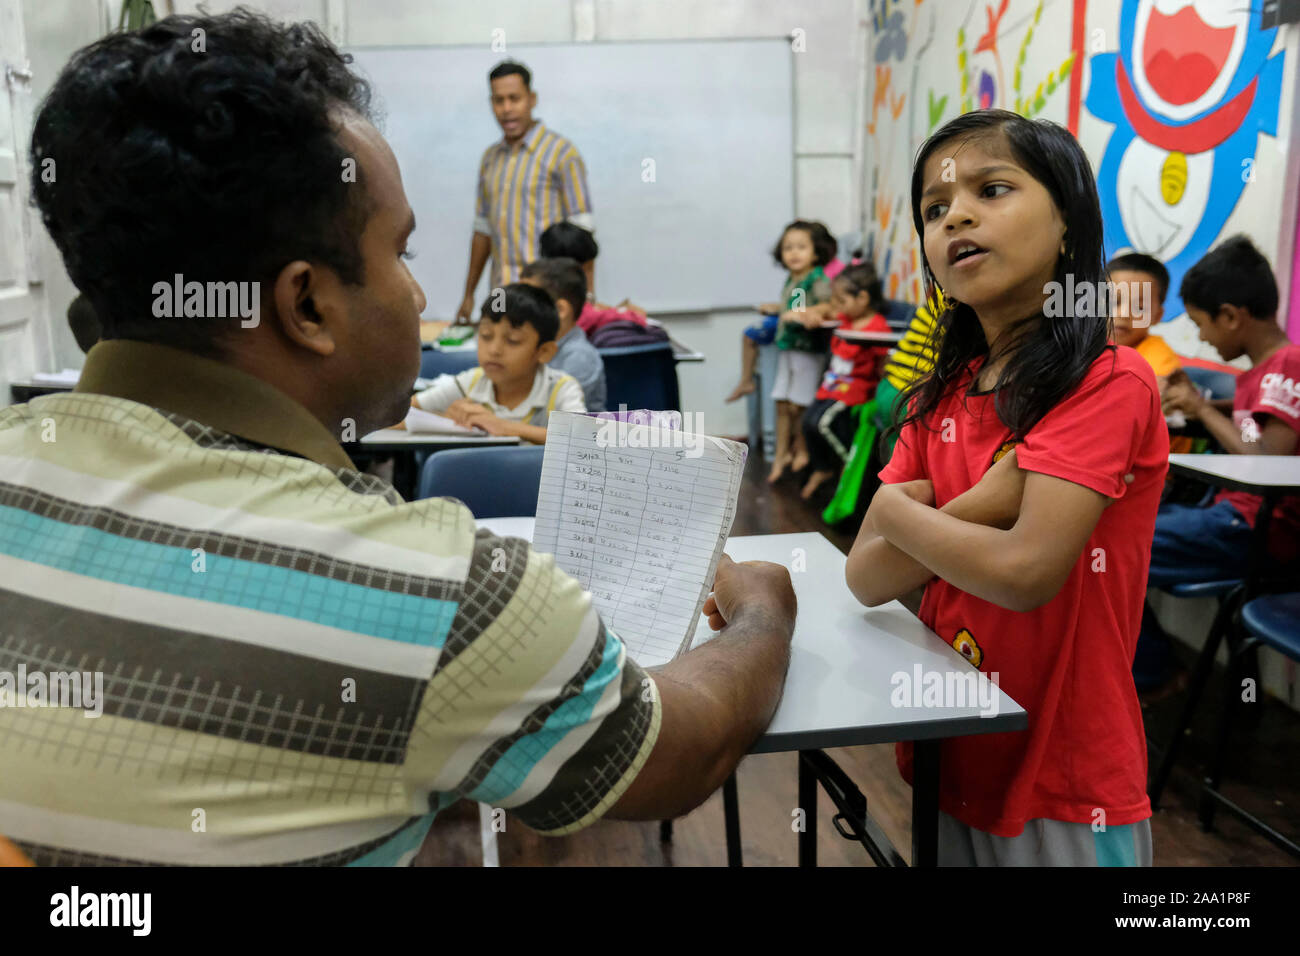 Ein Mädchen, das Auswendiglernen des Einmaleins in Mathe Klasse an der Akademie. Rohingya English Academy ist ein Learning Center, die freie Bildung auf die Rohingya-flüchtlinge sowohl für Kinder als auch für Erwachsene bietet, wurde es von Saif Ullah ein rohingya Bürger leben in Malaysia und auch ein englischer Tutor an der Akademie Wer erhält keine Unterstützung von der Regierung gegründet. Malaysia hat mehr als 177,690 registrierte Flüchtlinge und Asylsuchenden Rohingya Nach UNHCR-Statistik und 45,470 davon sind Kinder unter 18 Jahren. Stockfoto